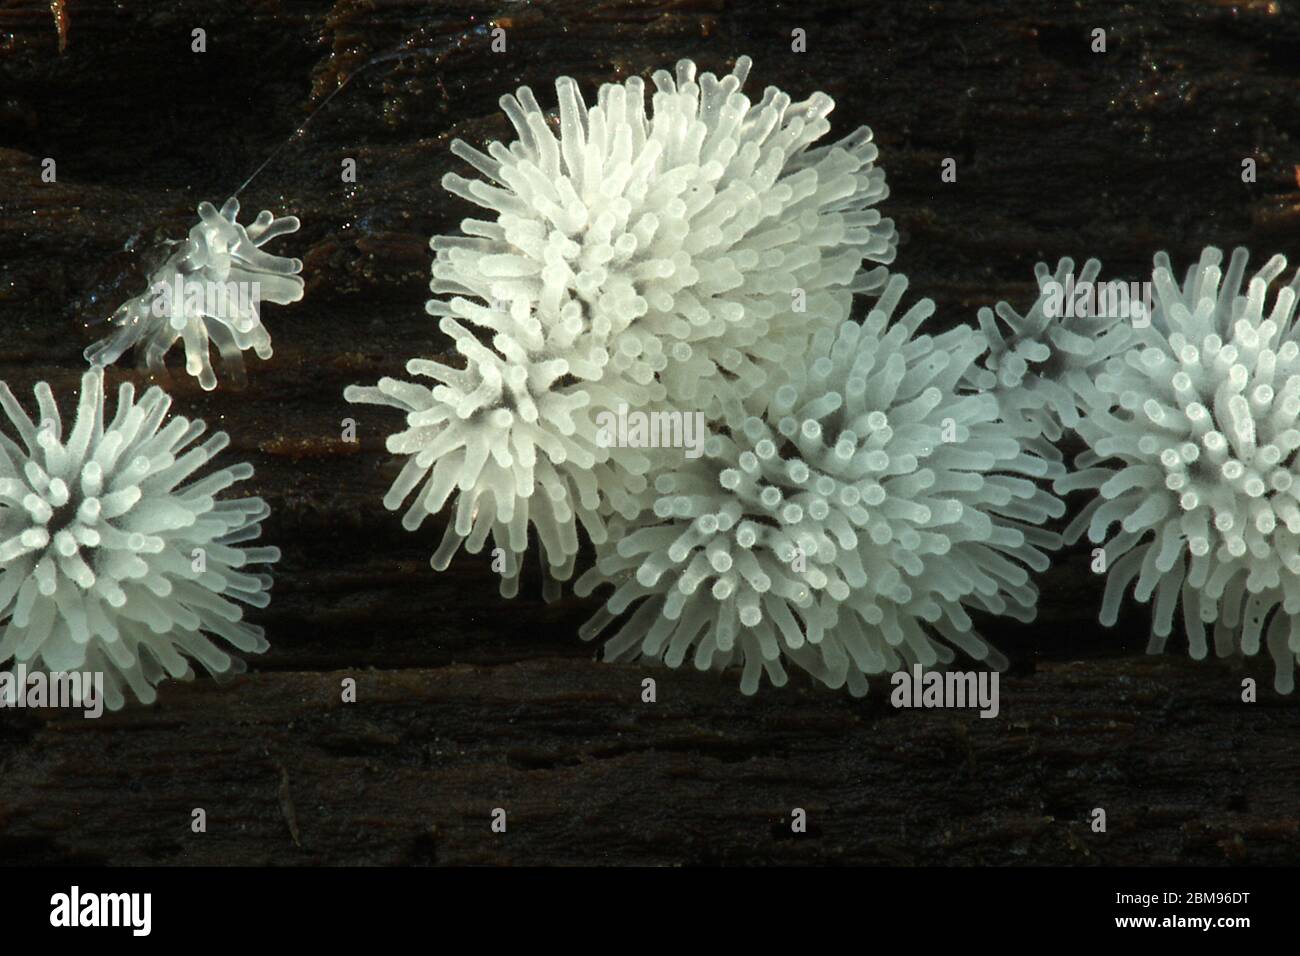 Honeycomb slime mold (Ceratiomyxa fruticulosa) Stock Photo